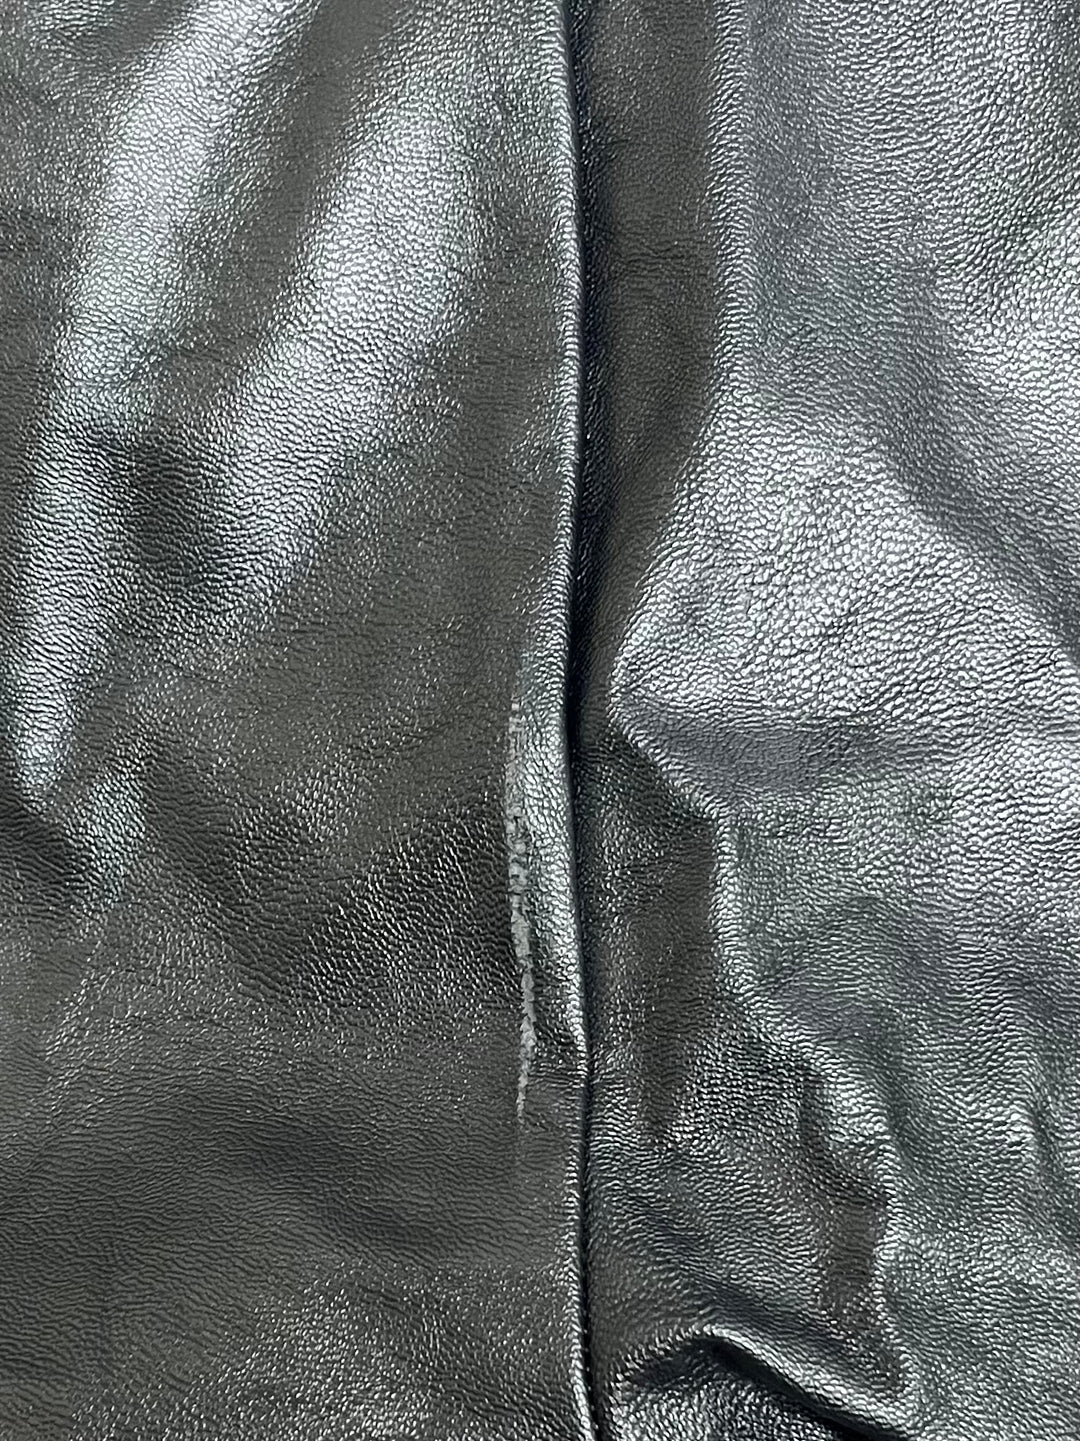 Bardot Women's Zipper Polly Faux-Leather Pants Black Size S/4